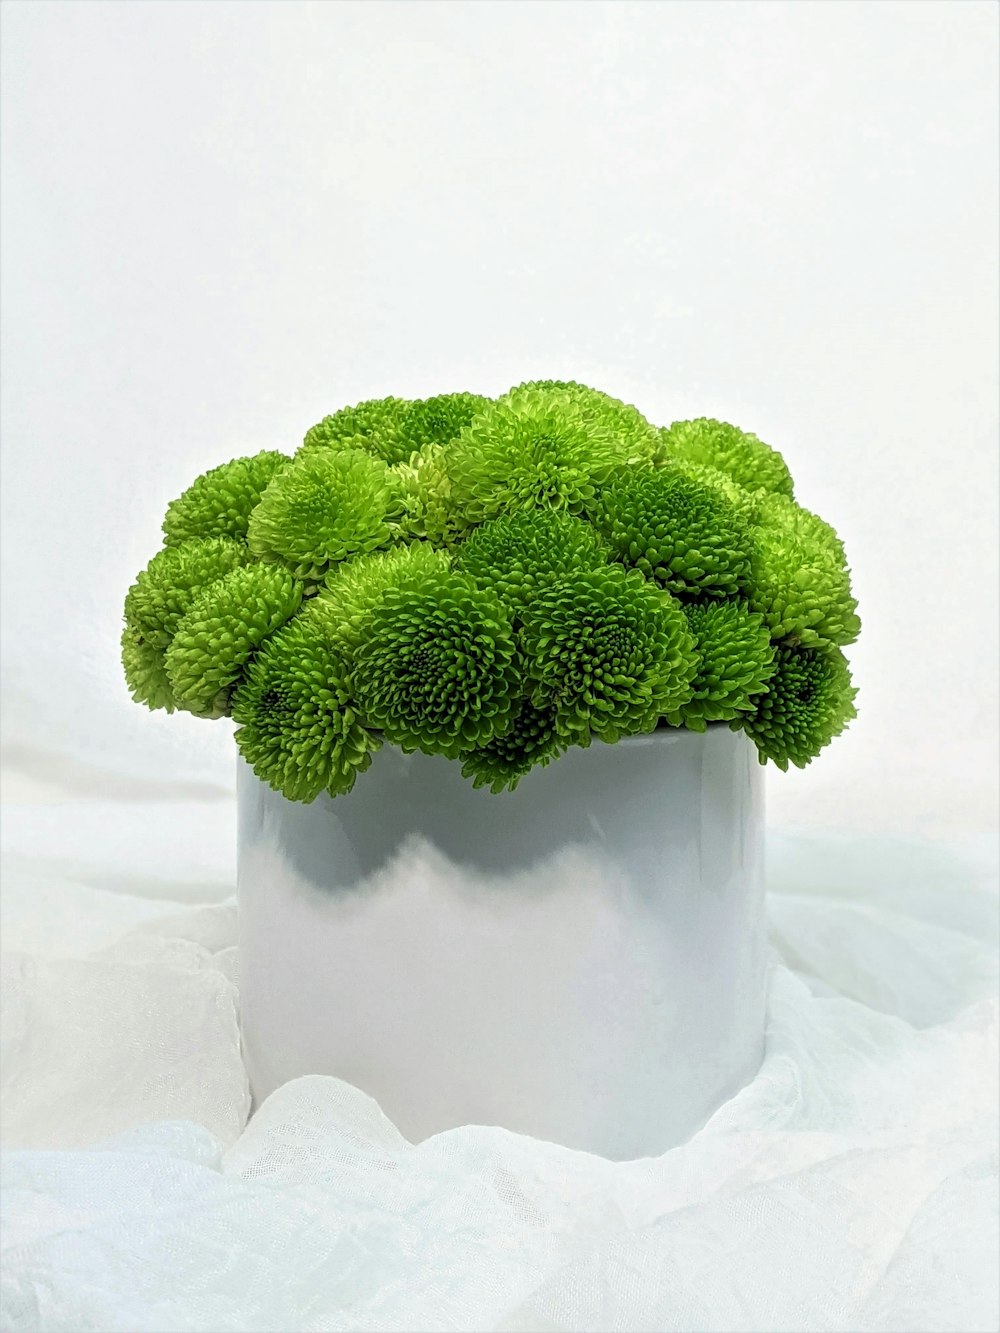 흰색 세라믹 꽃병에 녹색 식물